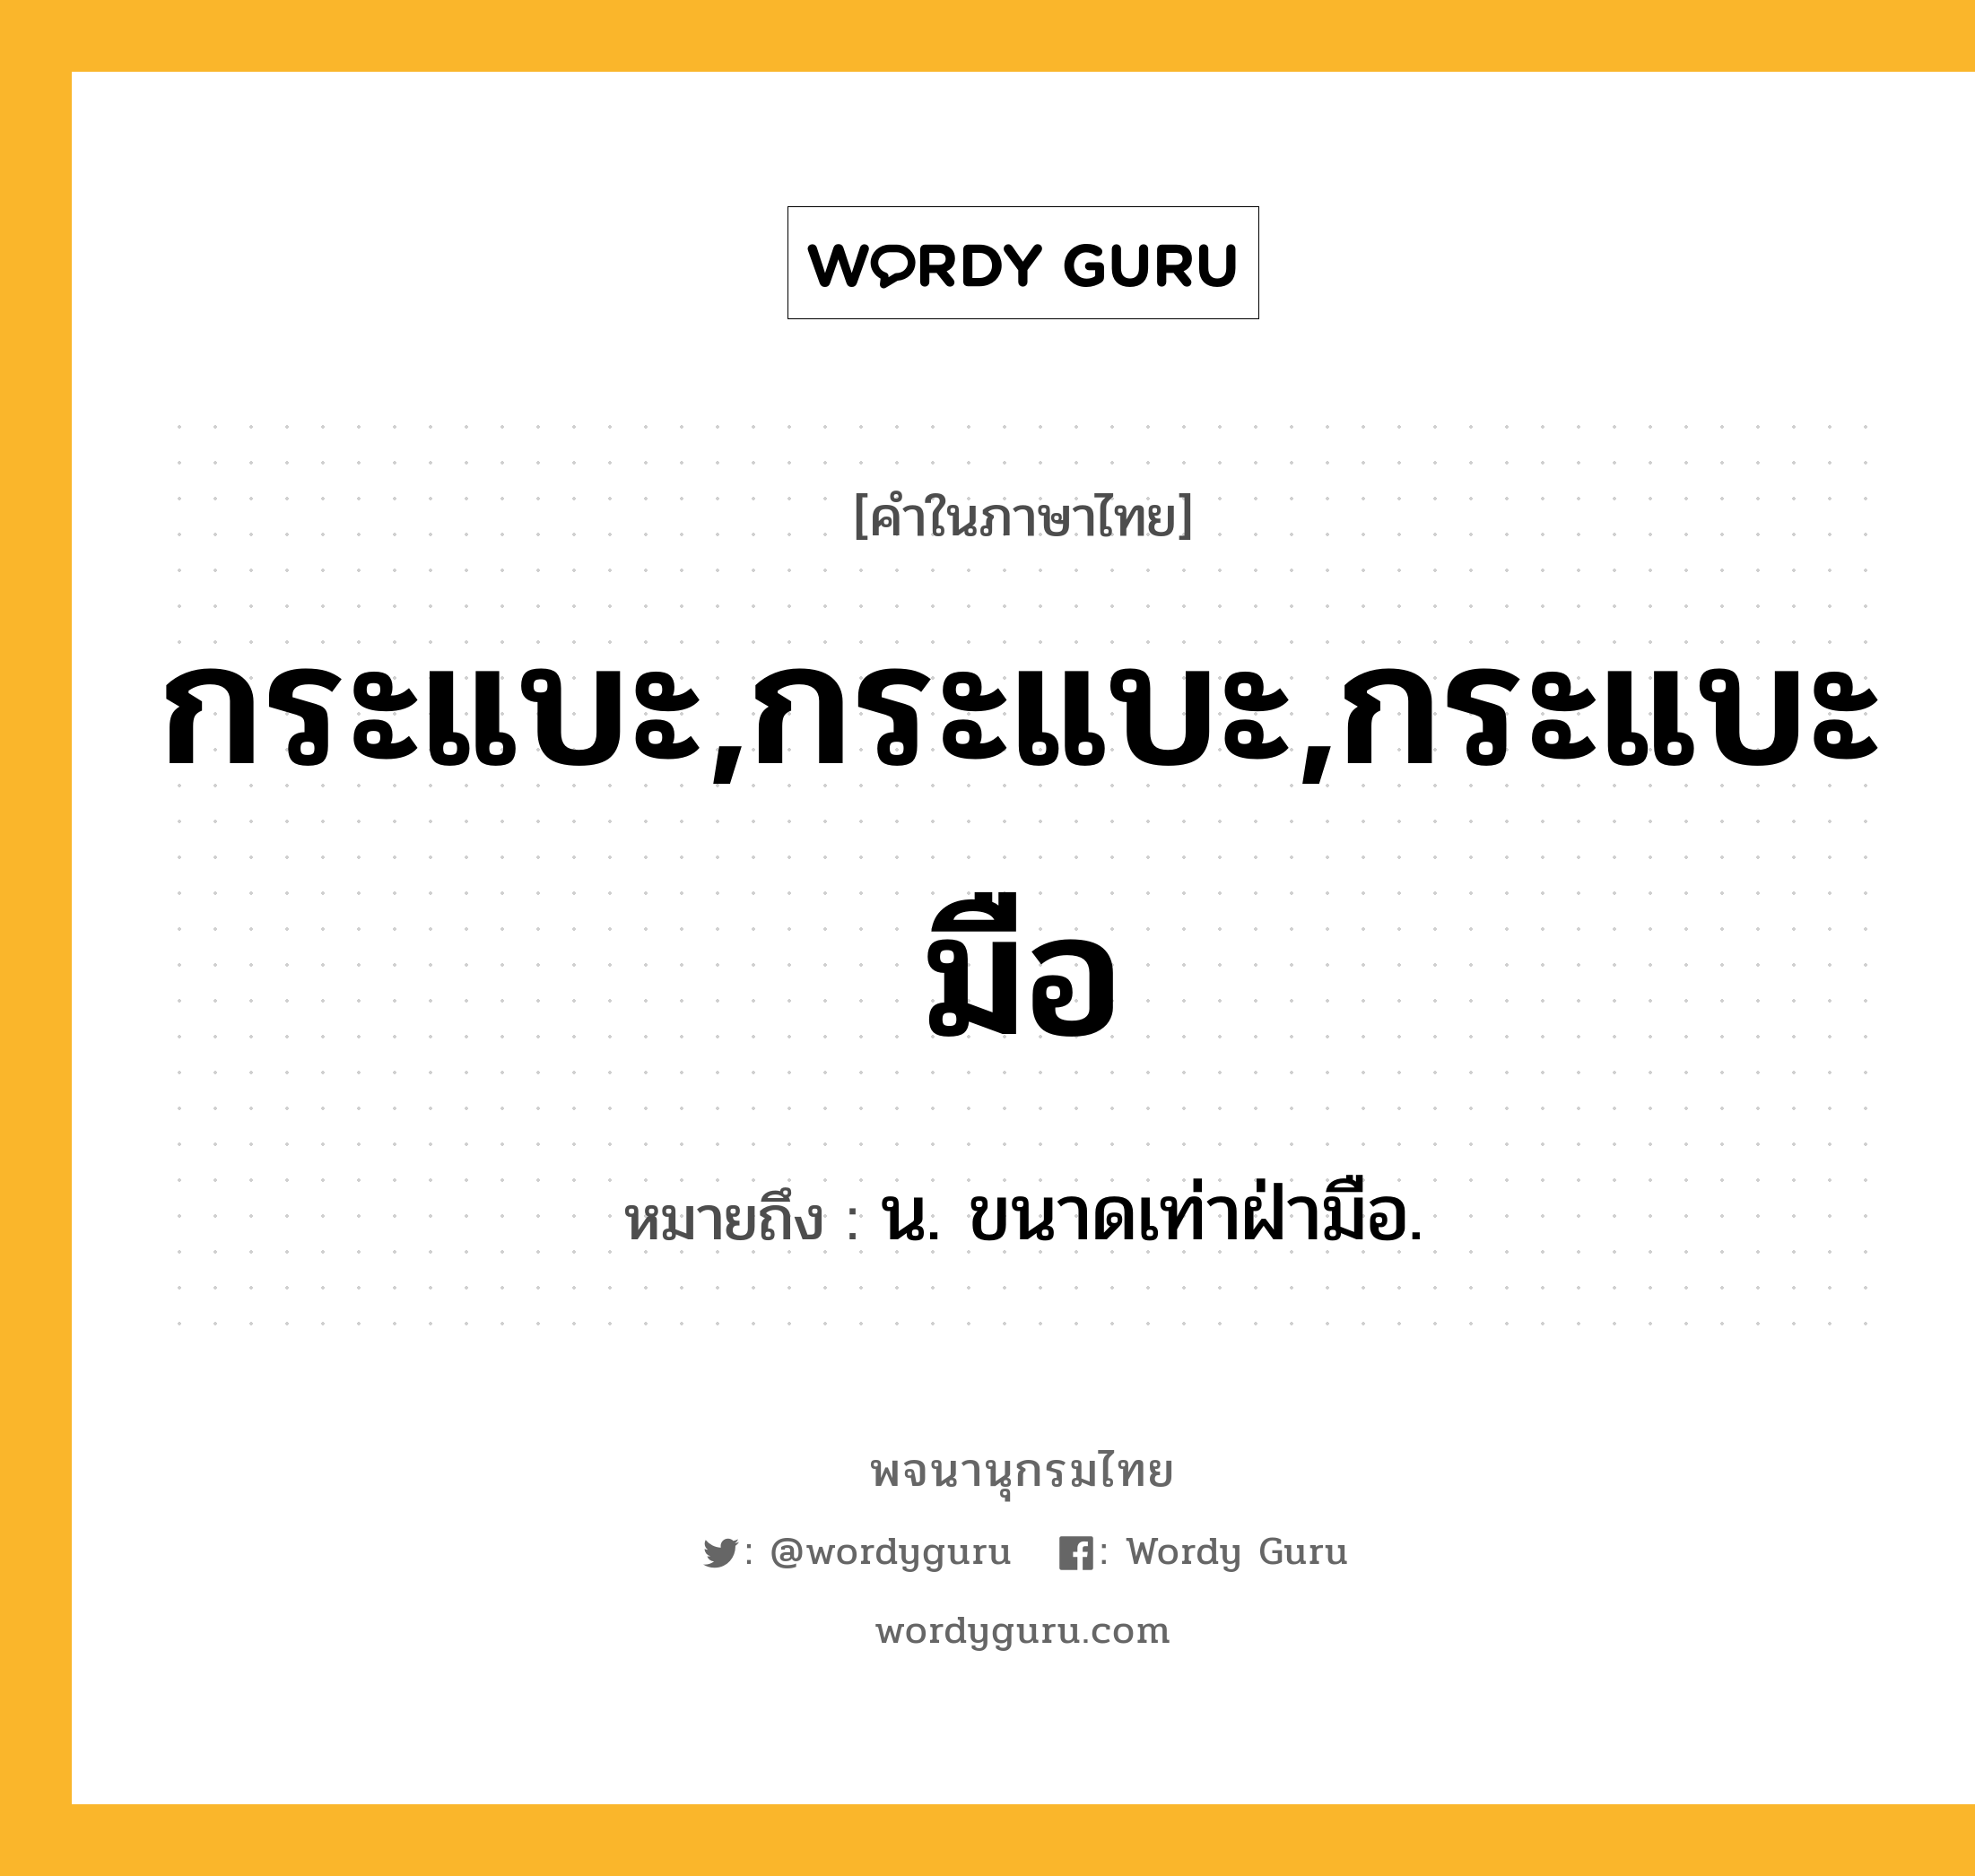 กระแบะ,กระแบะ,กระแบะมือ ความหมาย หมายถึงอะไร?, คำในภาษาไทย กระแบะ,กระแบะ,กระแบะมือ หมายถึง น. ขนาดเท่าฝ่ามือ.